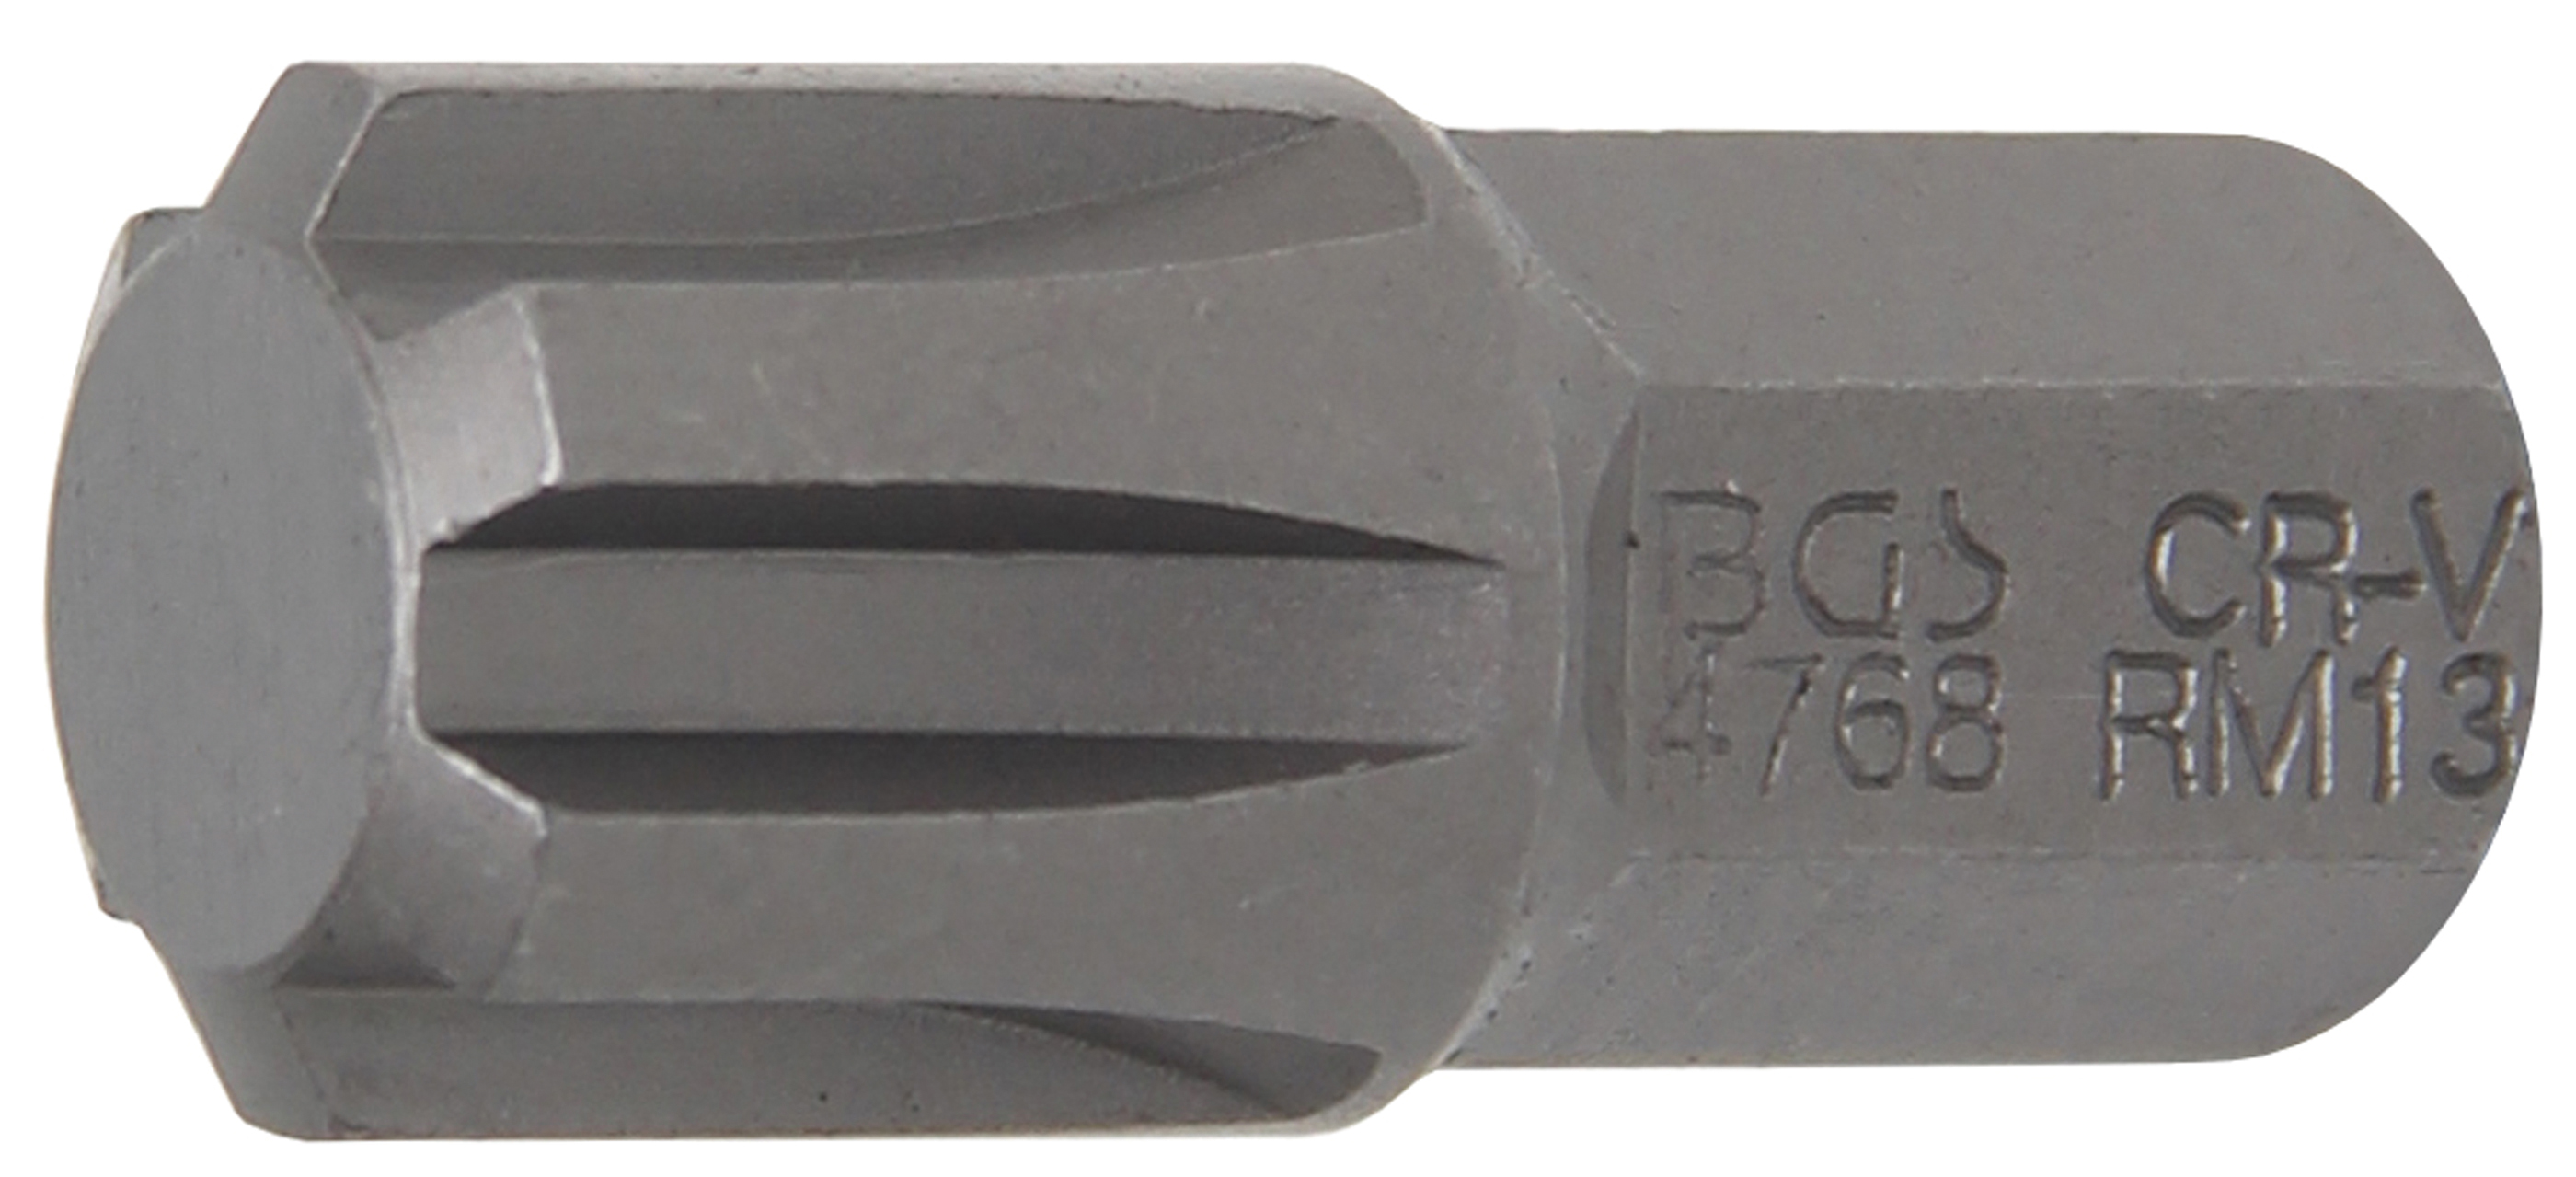 3/8" BGS technic Embout10 mm profil cannelé M6 pour RIBE 